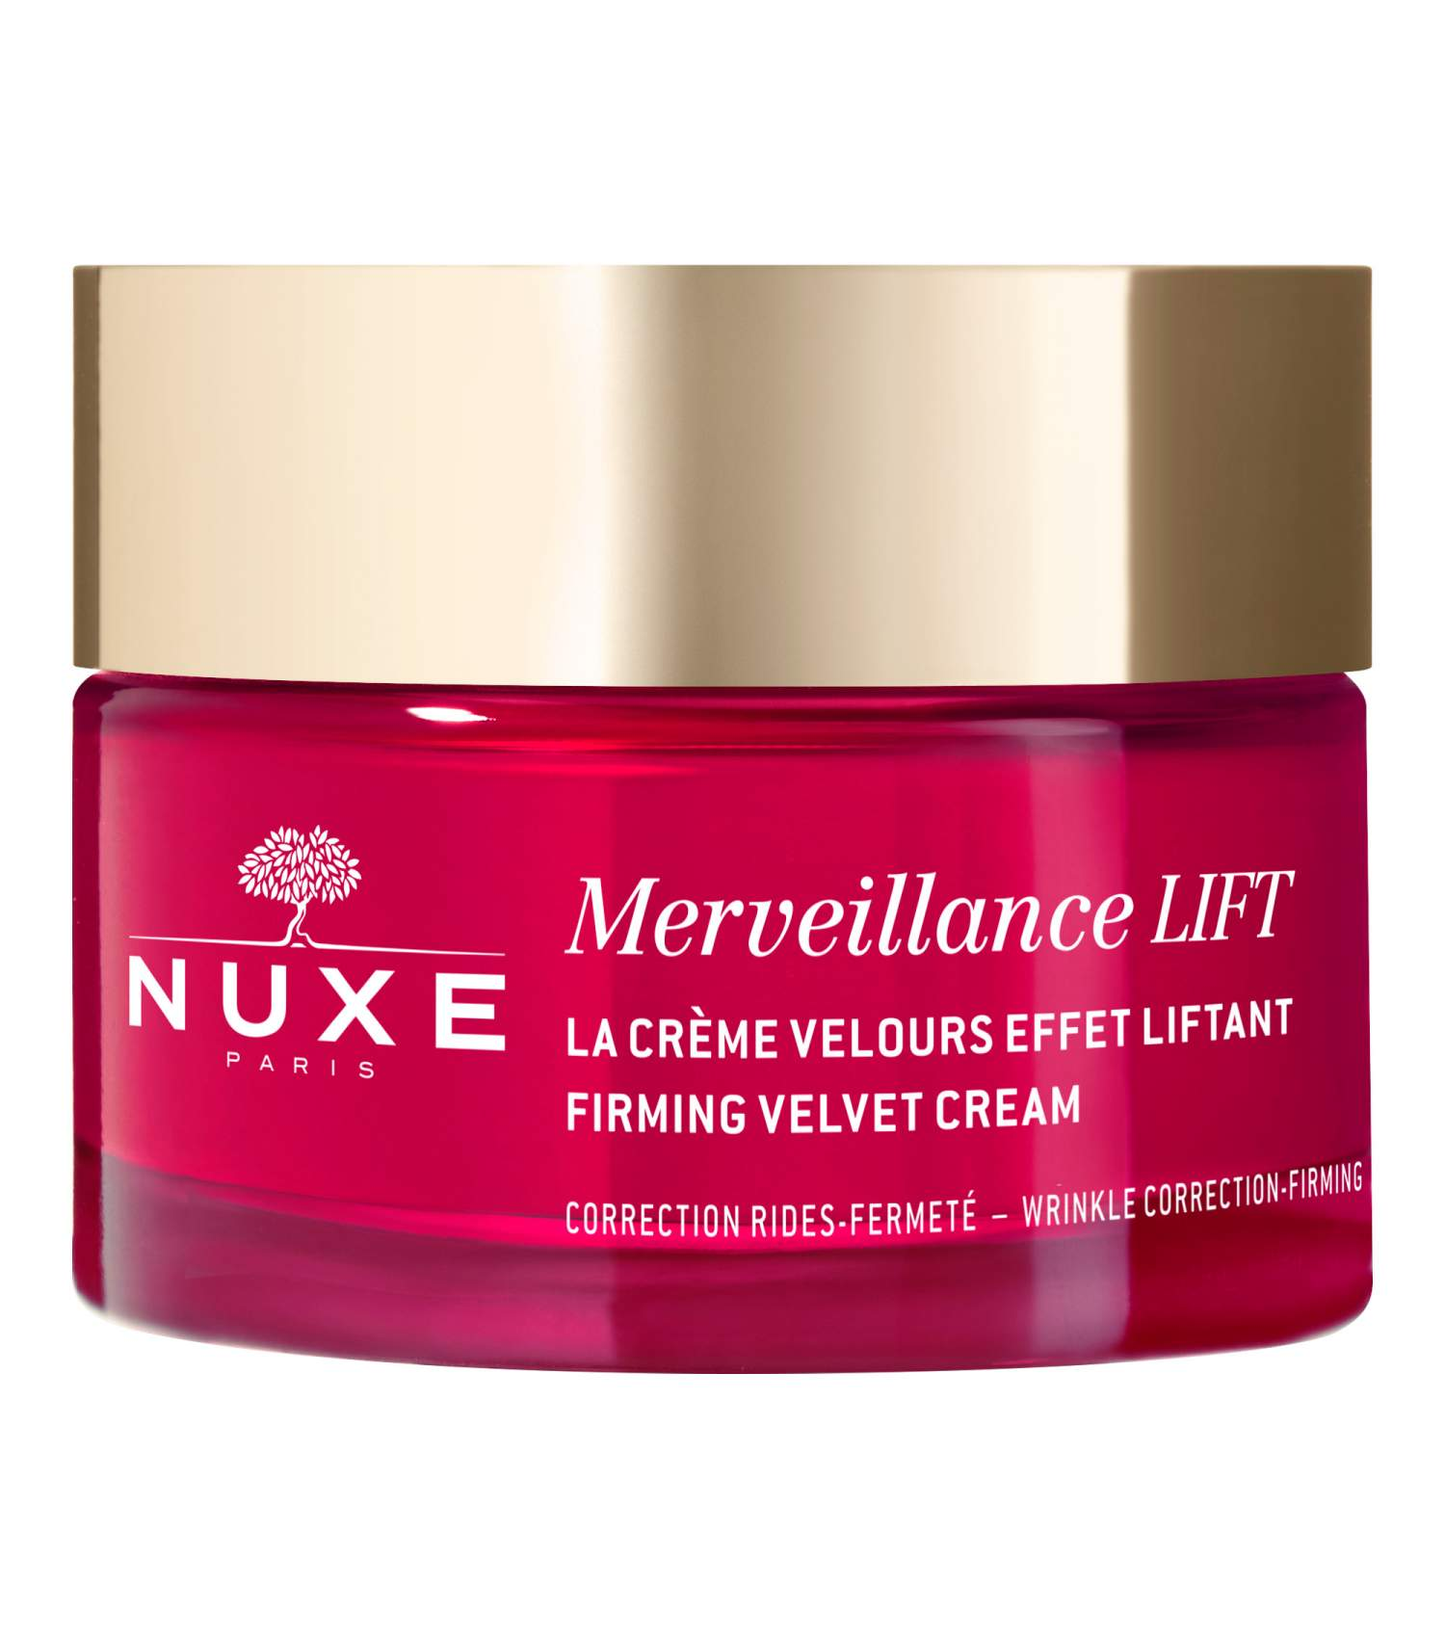 NUXE Merveillance® LIFT Firming Velvet Cream